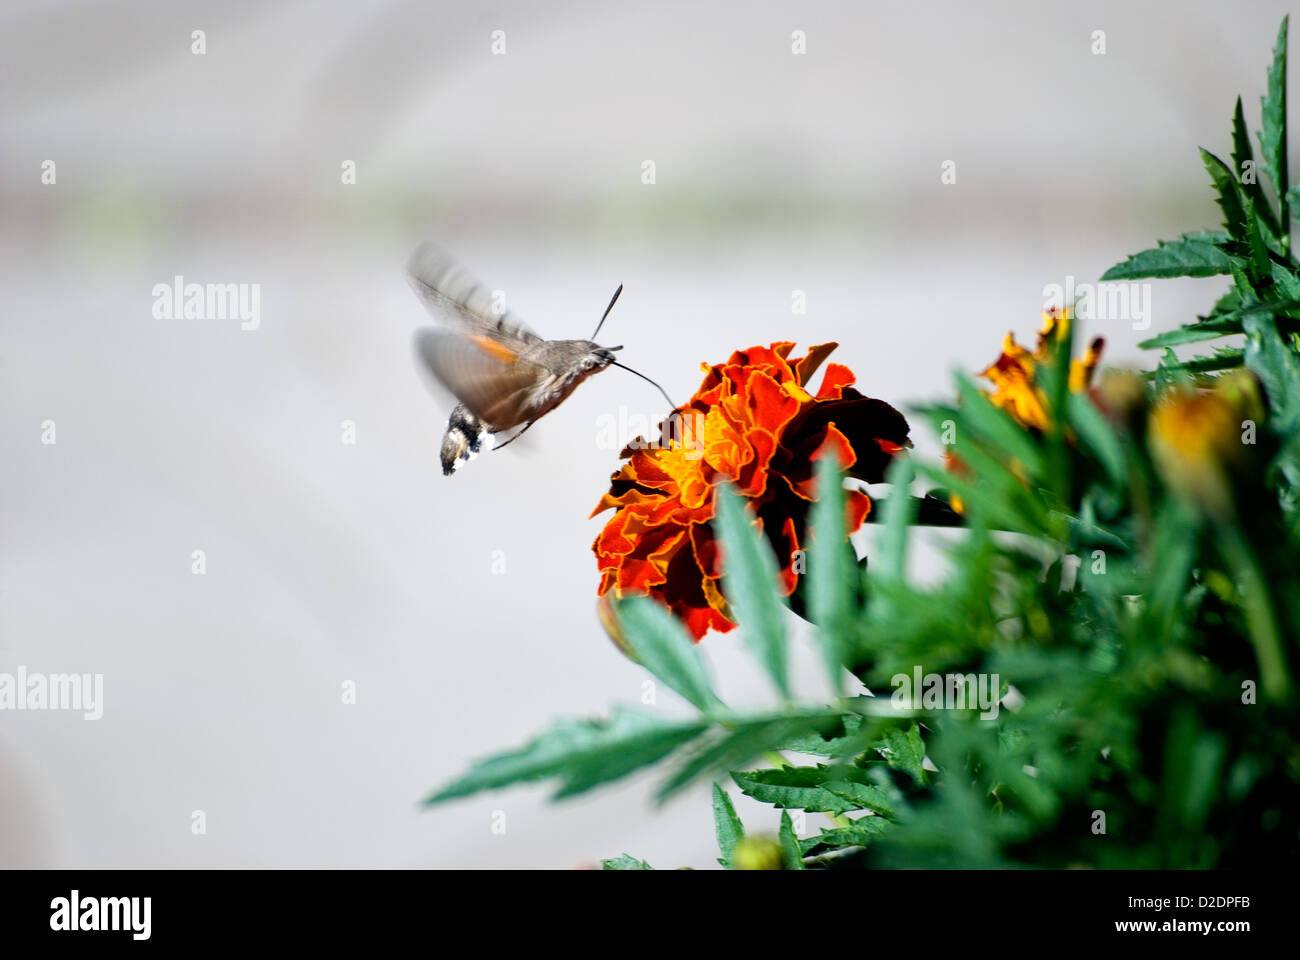 La mariposa bebe el néctar de una flor de una caléndula Foto de stock